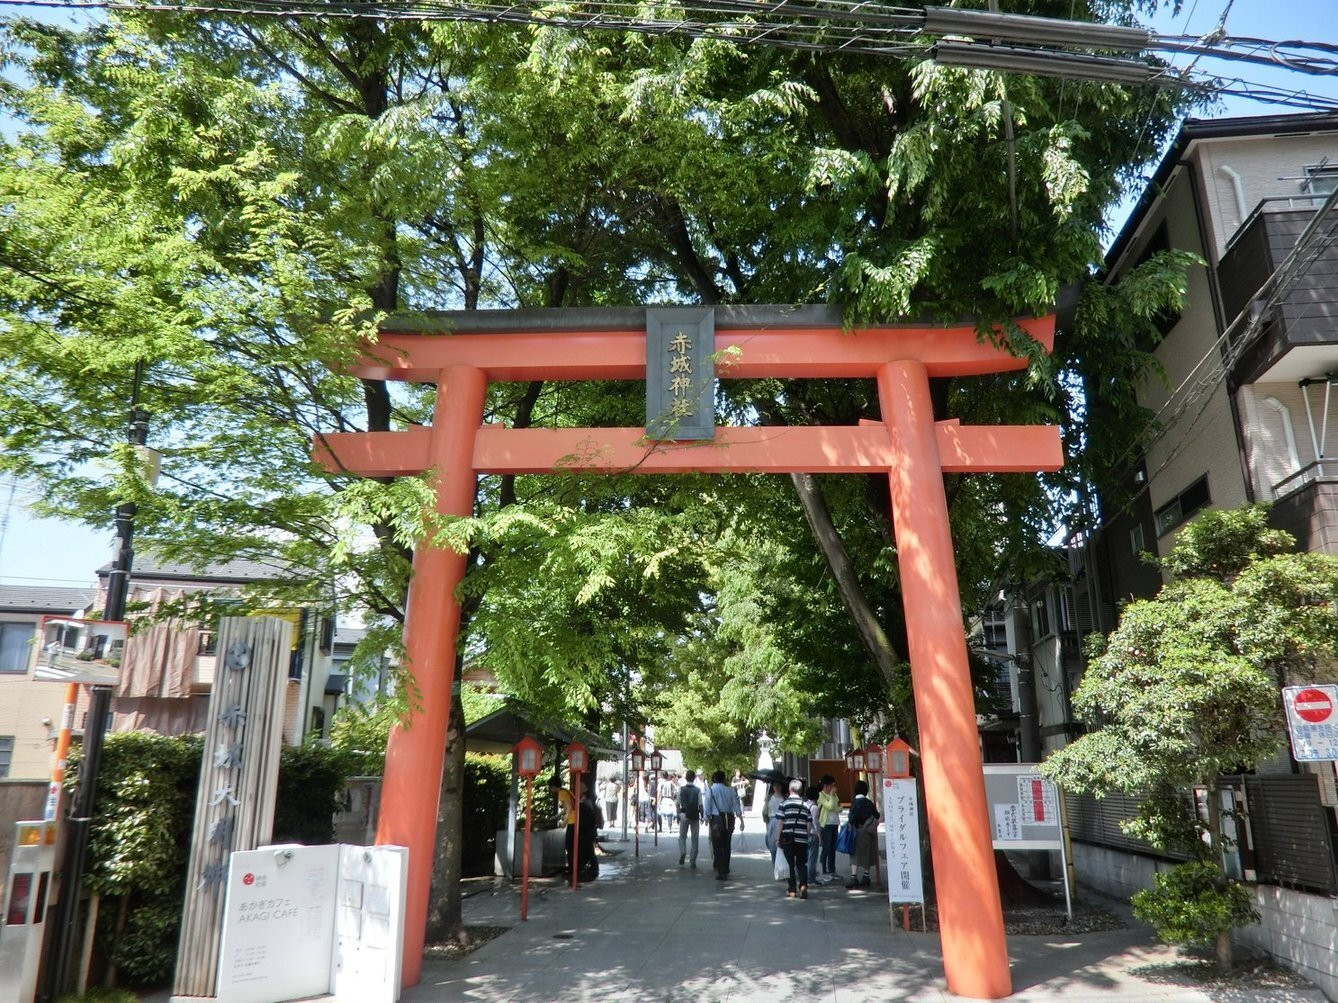 「あかぎカフェ」その他 811363 <'16/05/05撮影>新緑で快晴の赤木神社の風景です